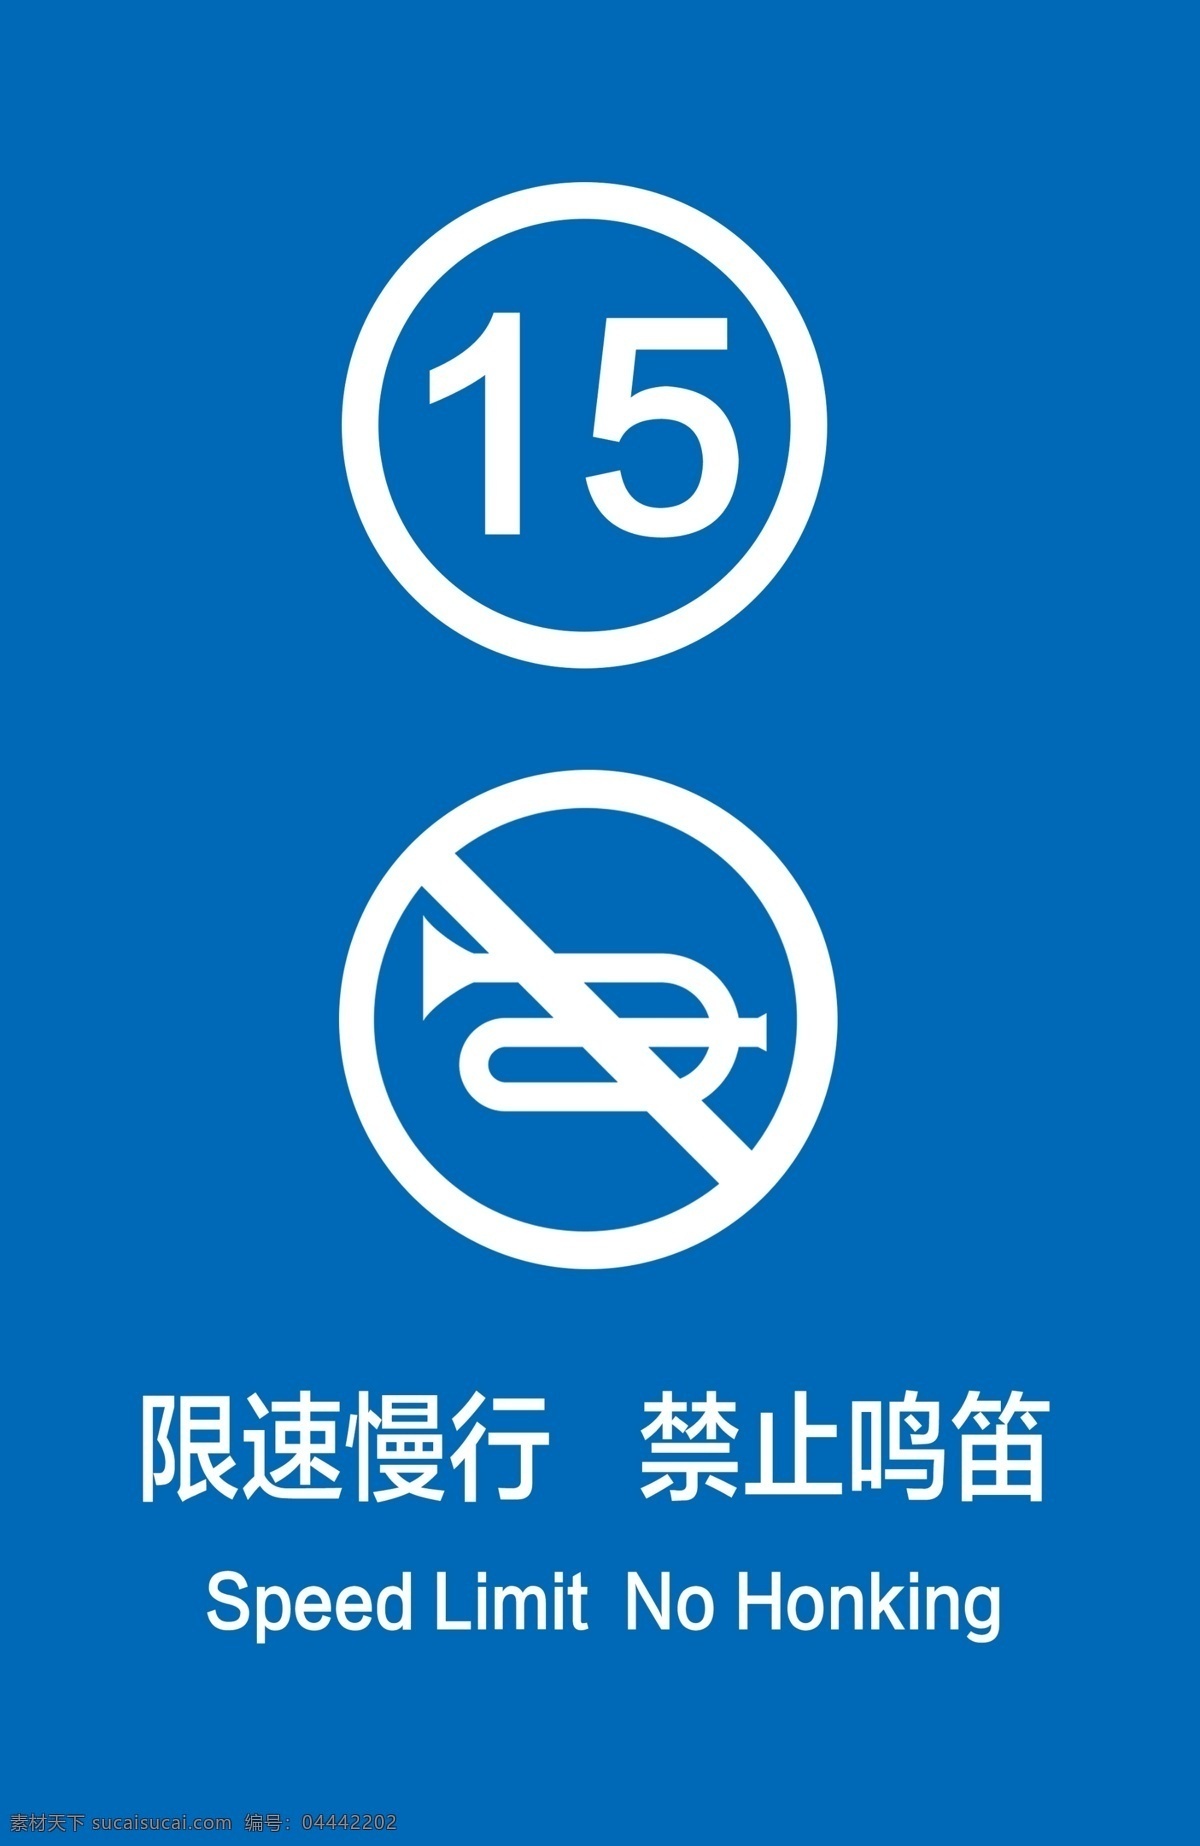 减速慢行 限速 鸣笛 禁止鸣笛 限速慢行 停车场 车库 标识 提示